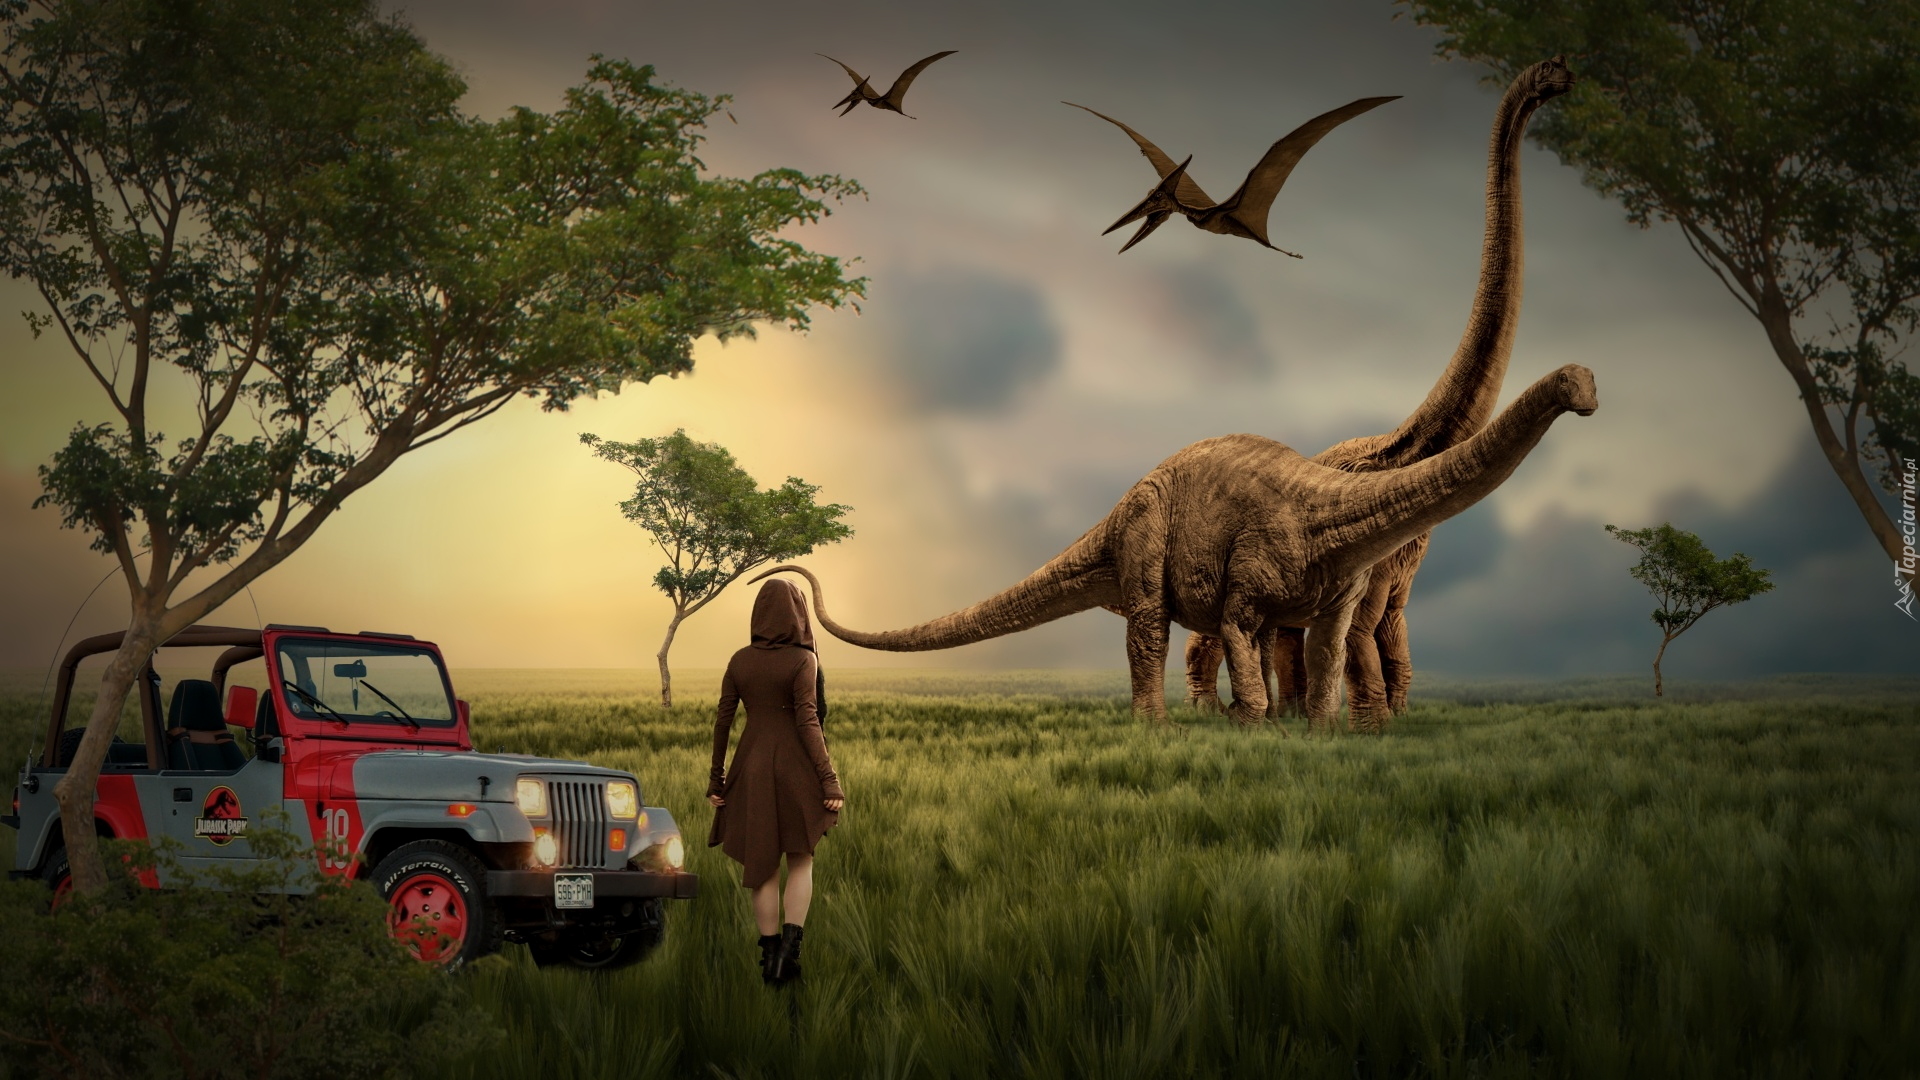 Grafika, Wschód słońca, Dziewczyna, Dinozaury, Jeep, Drzewa, Trawy